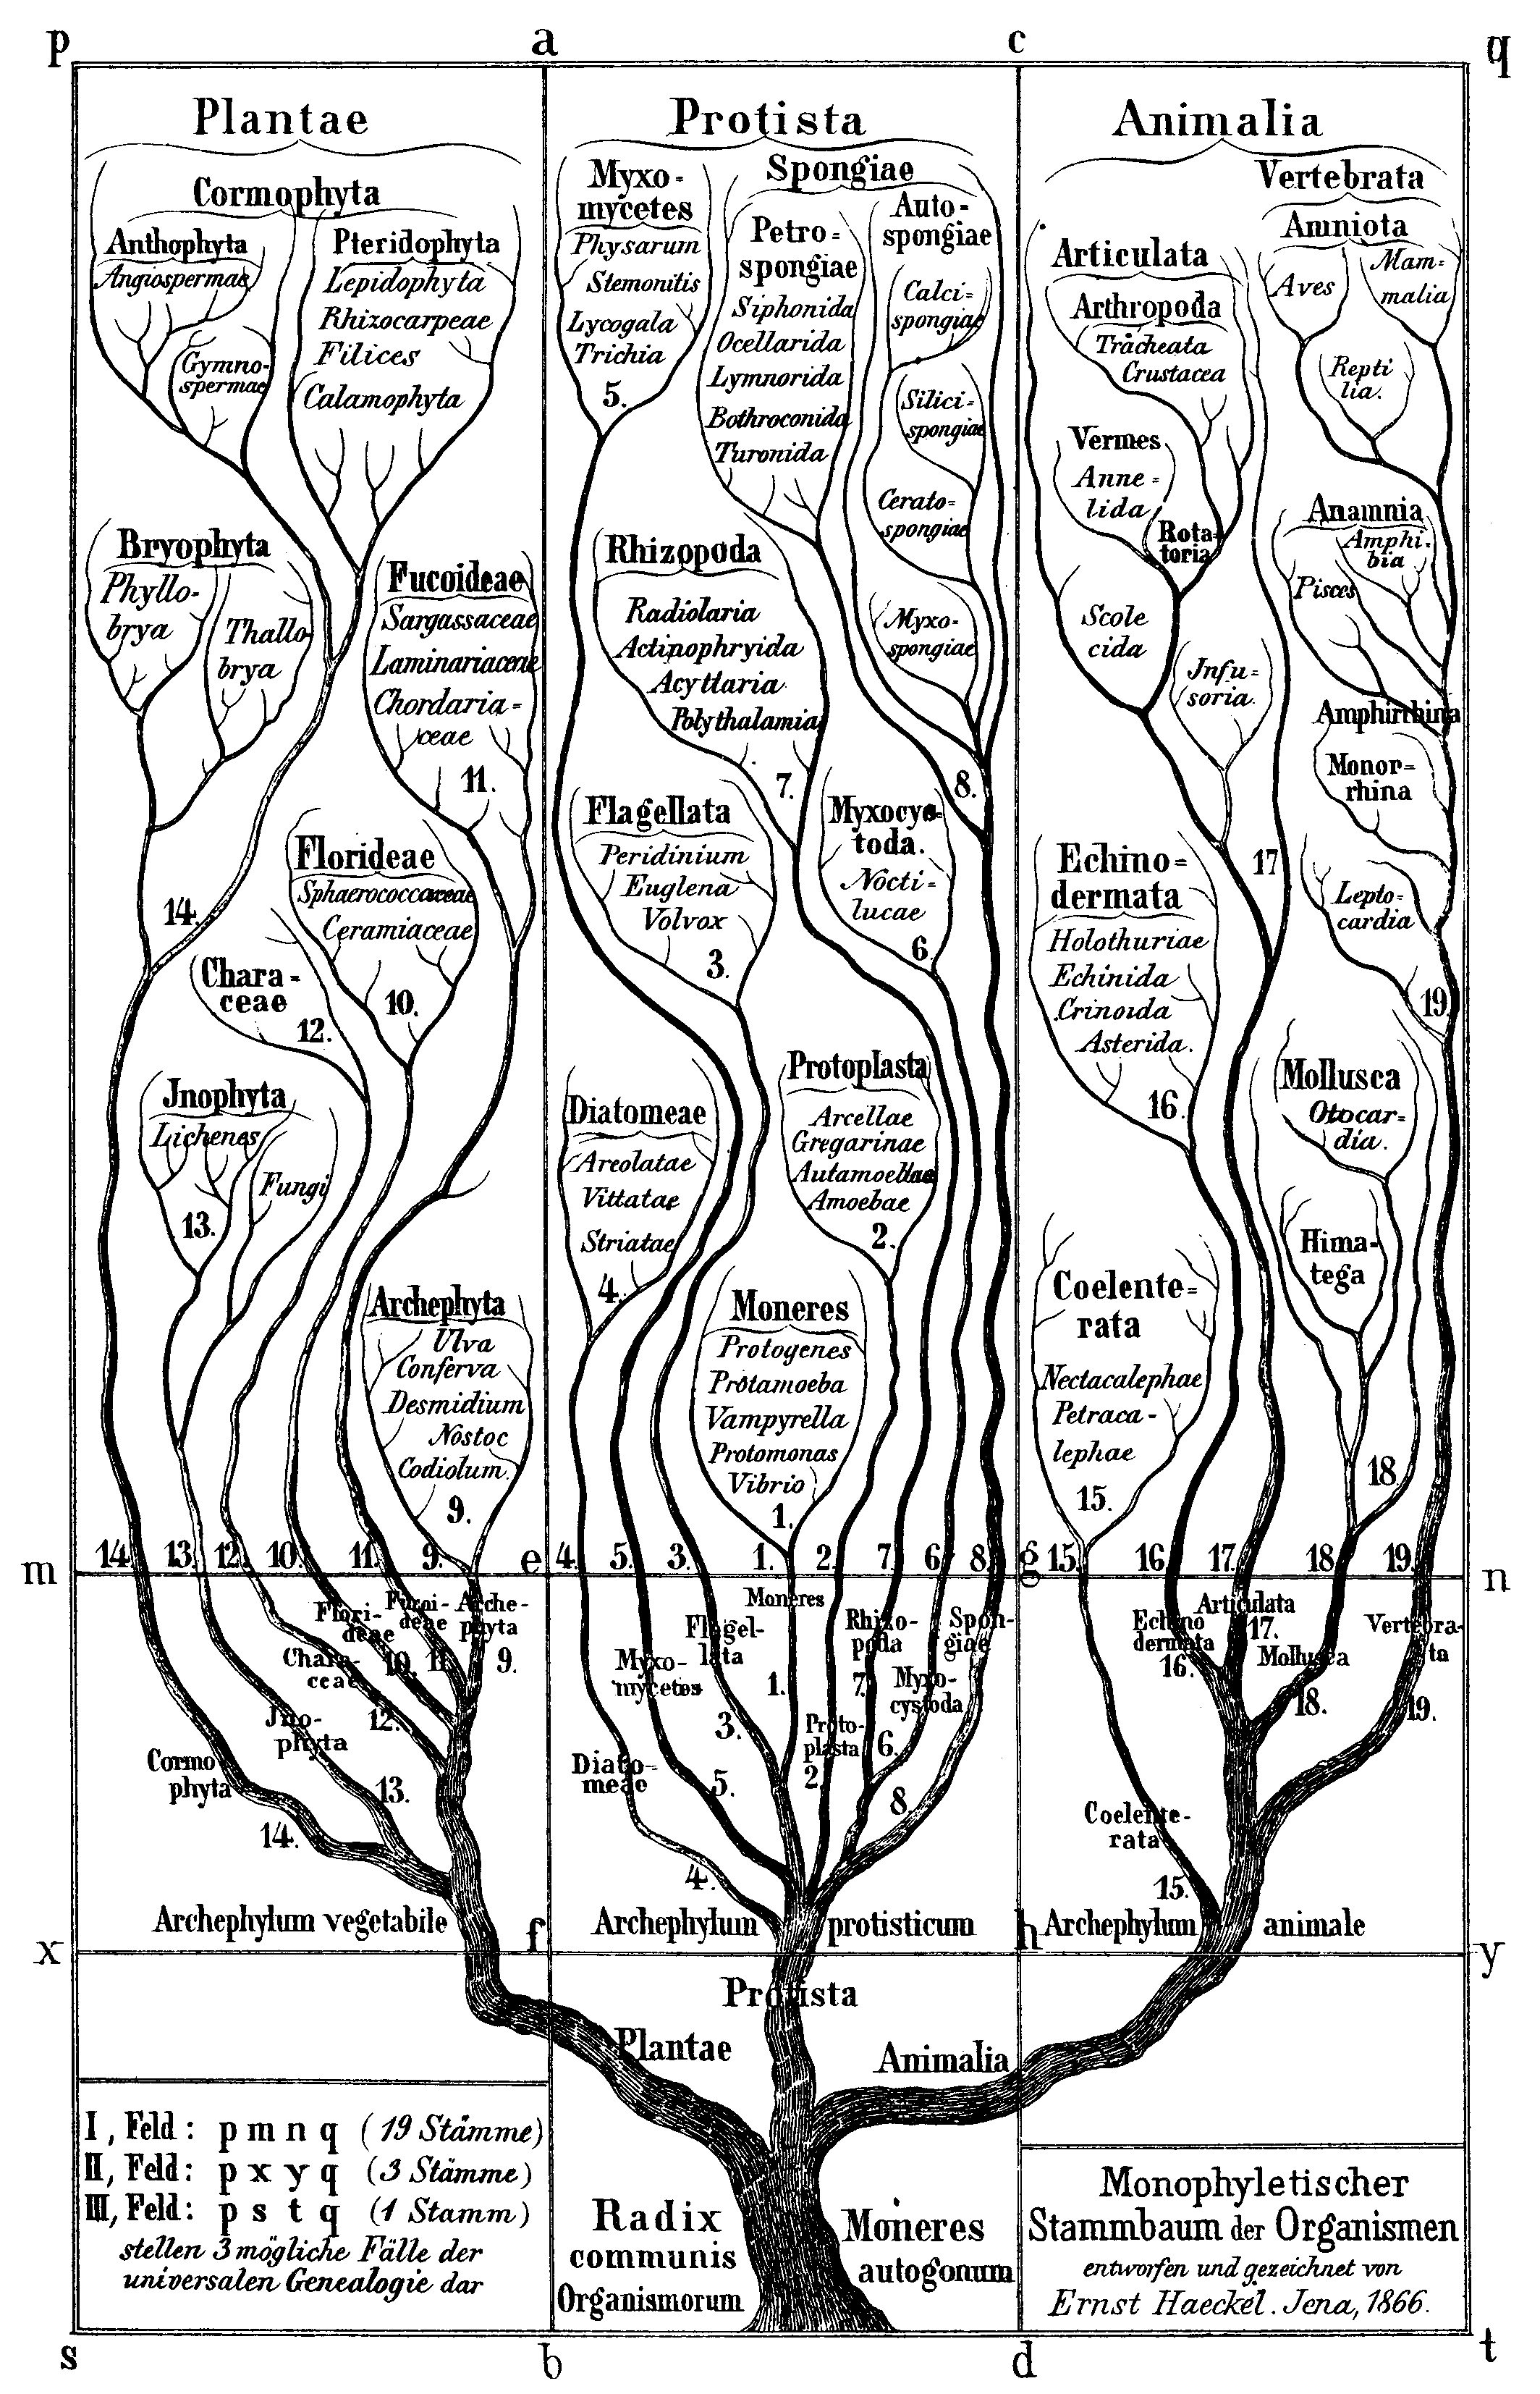 “Monophyletischer Stambaum der Organismen” from Generelle Morphologie der Organismen (1866) with the three branches Plantae, Protista, Animalia.